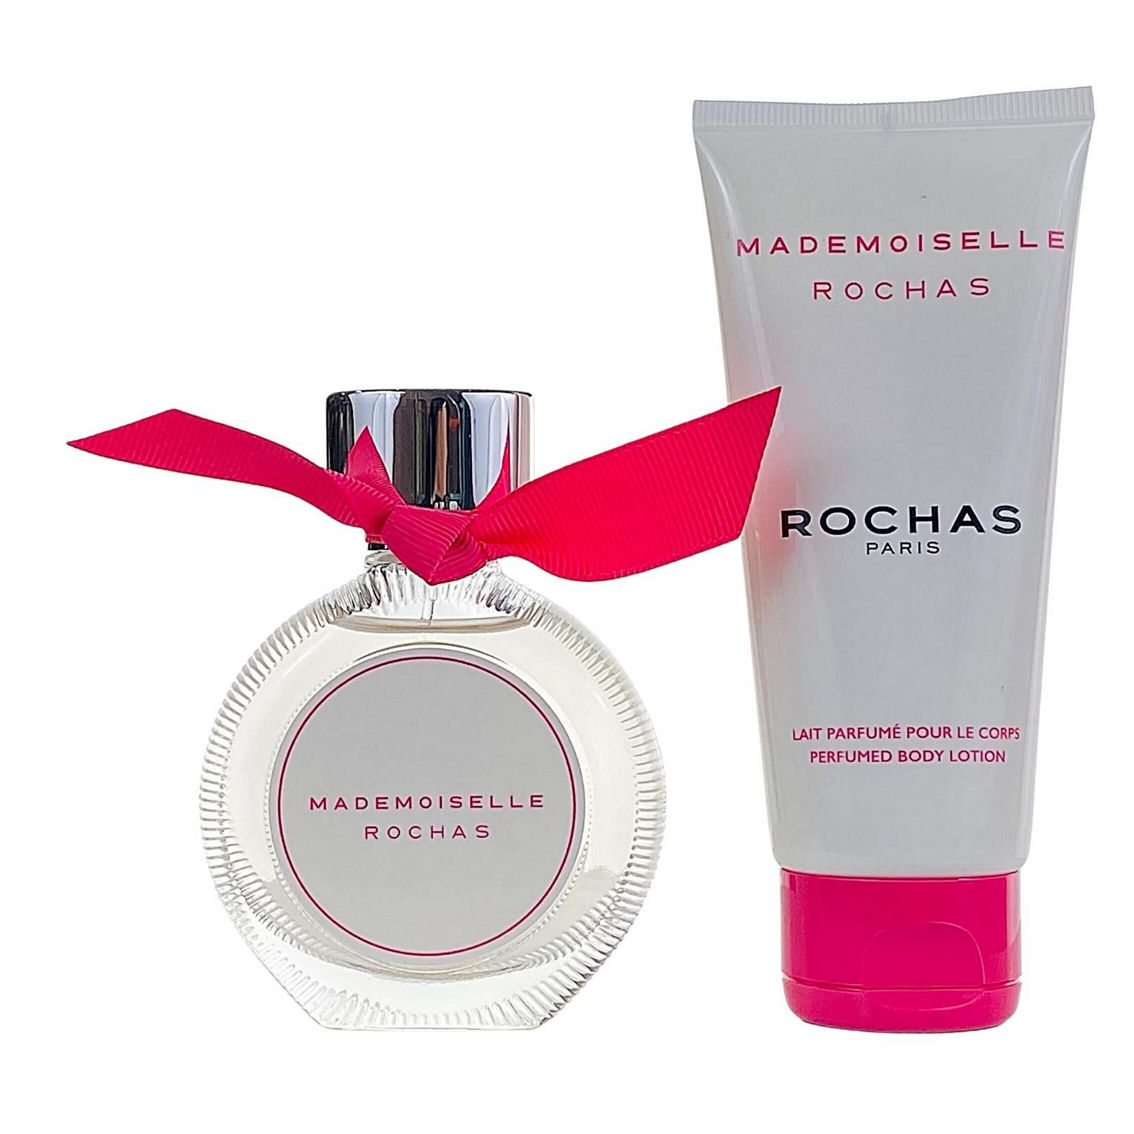 Rochas Rochas Mademoiselle 2 Pc. Gift Set for Women - Image 2 of 2